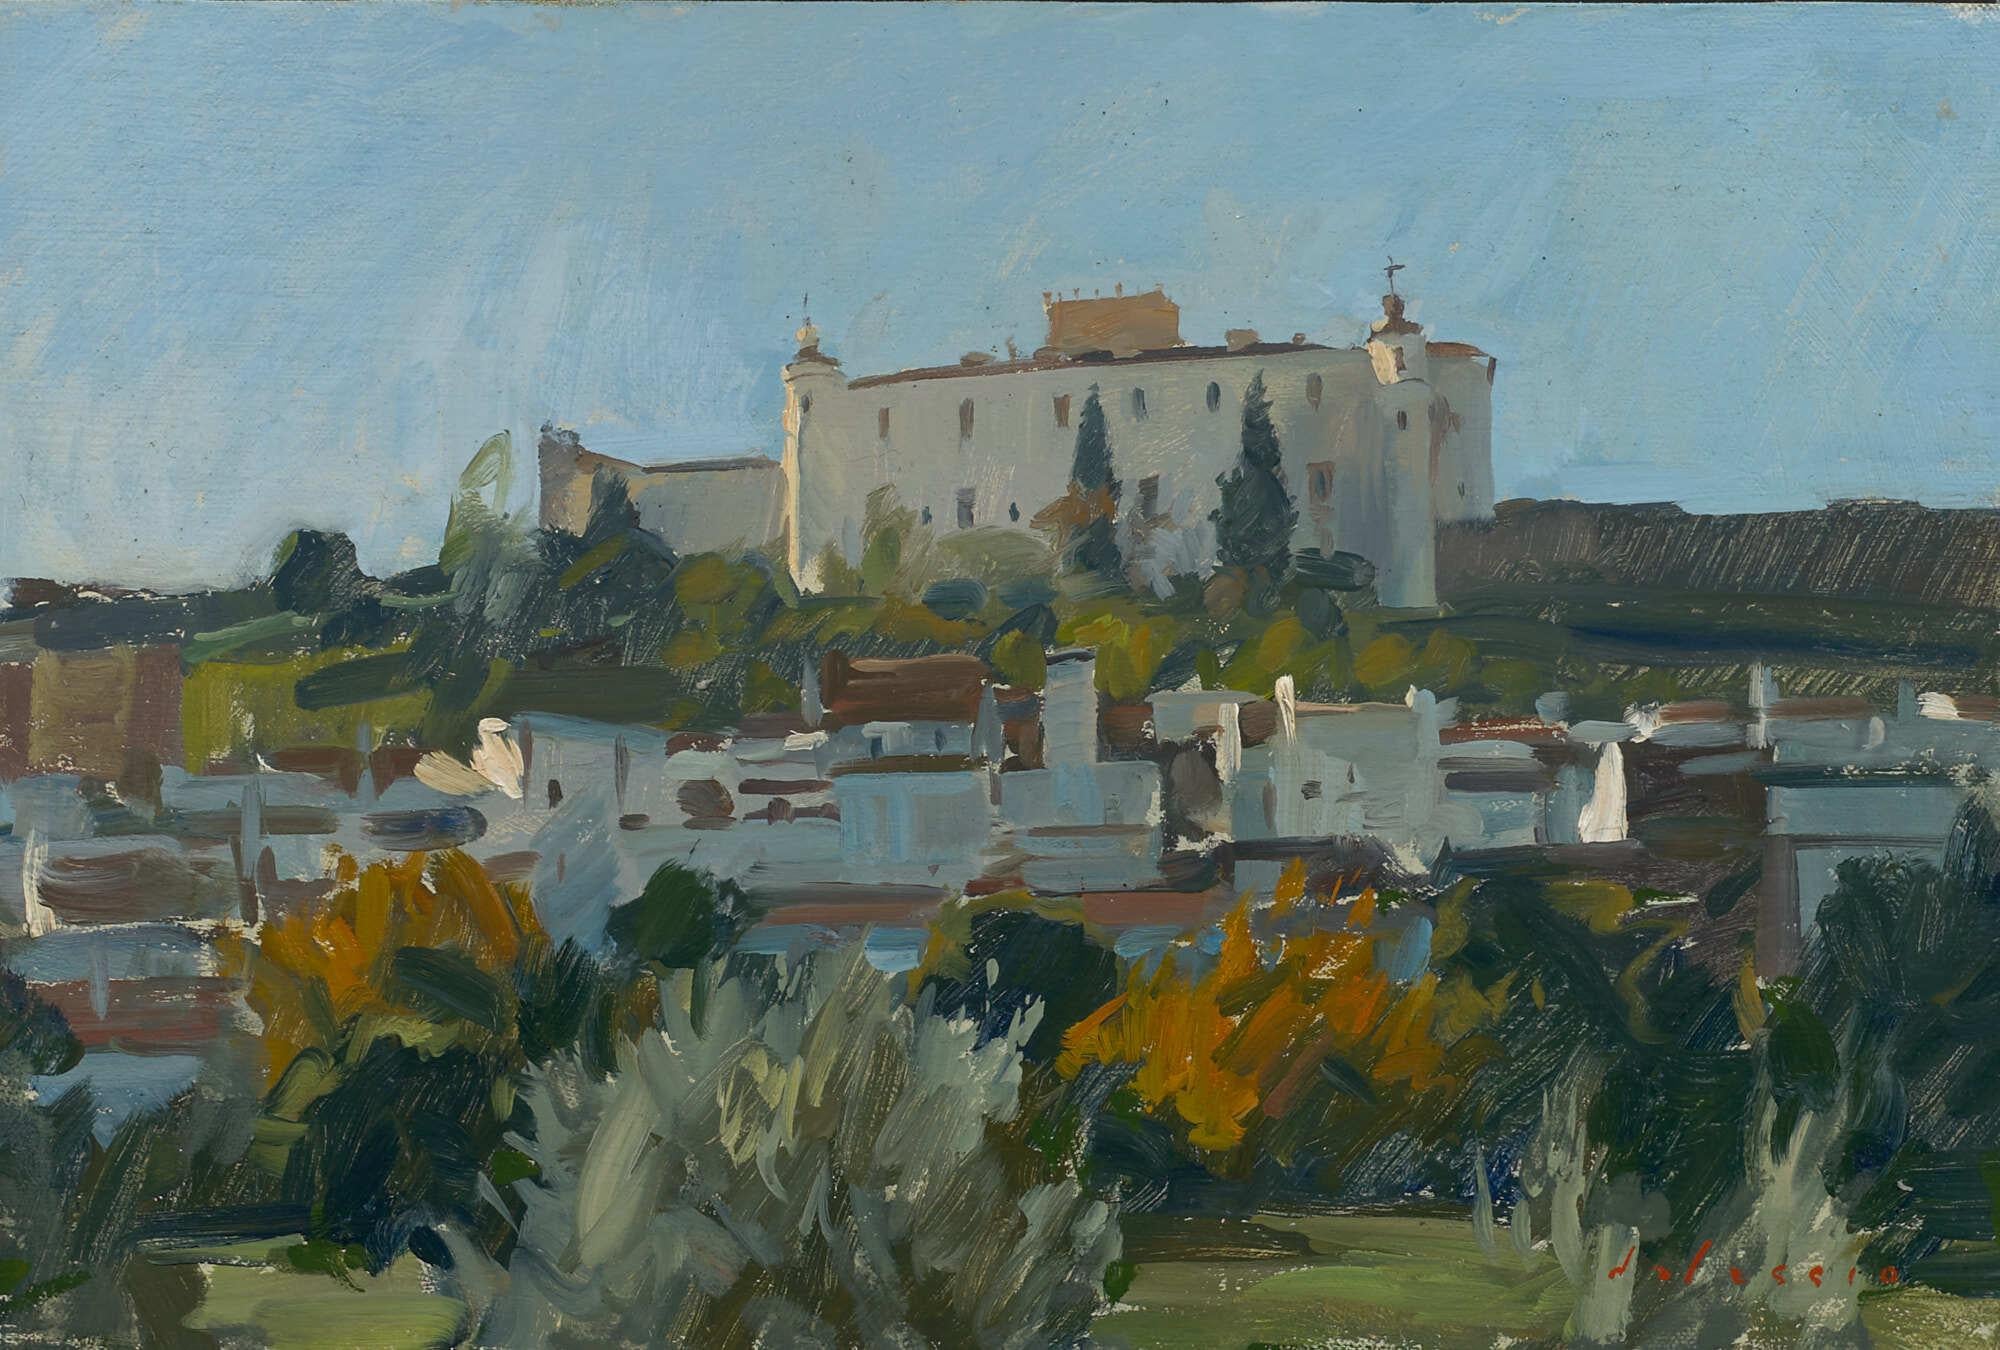 Still-Life Painting Marc Dalessio - "Château d'Estremoz, Contemporary" peinture à l'huile contemporaine impressionniste en plein air.